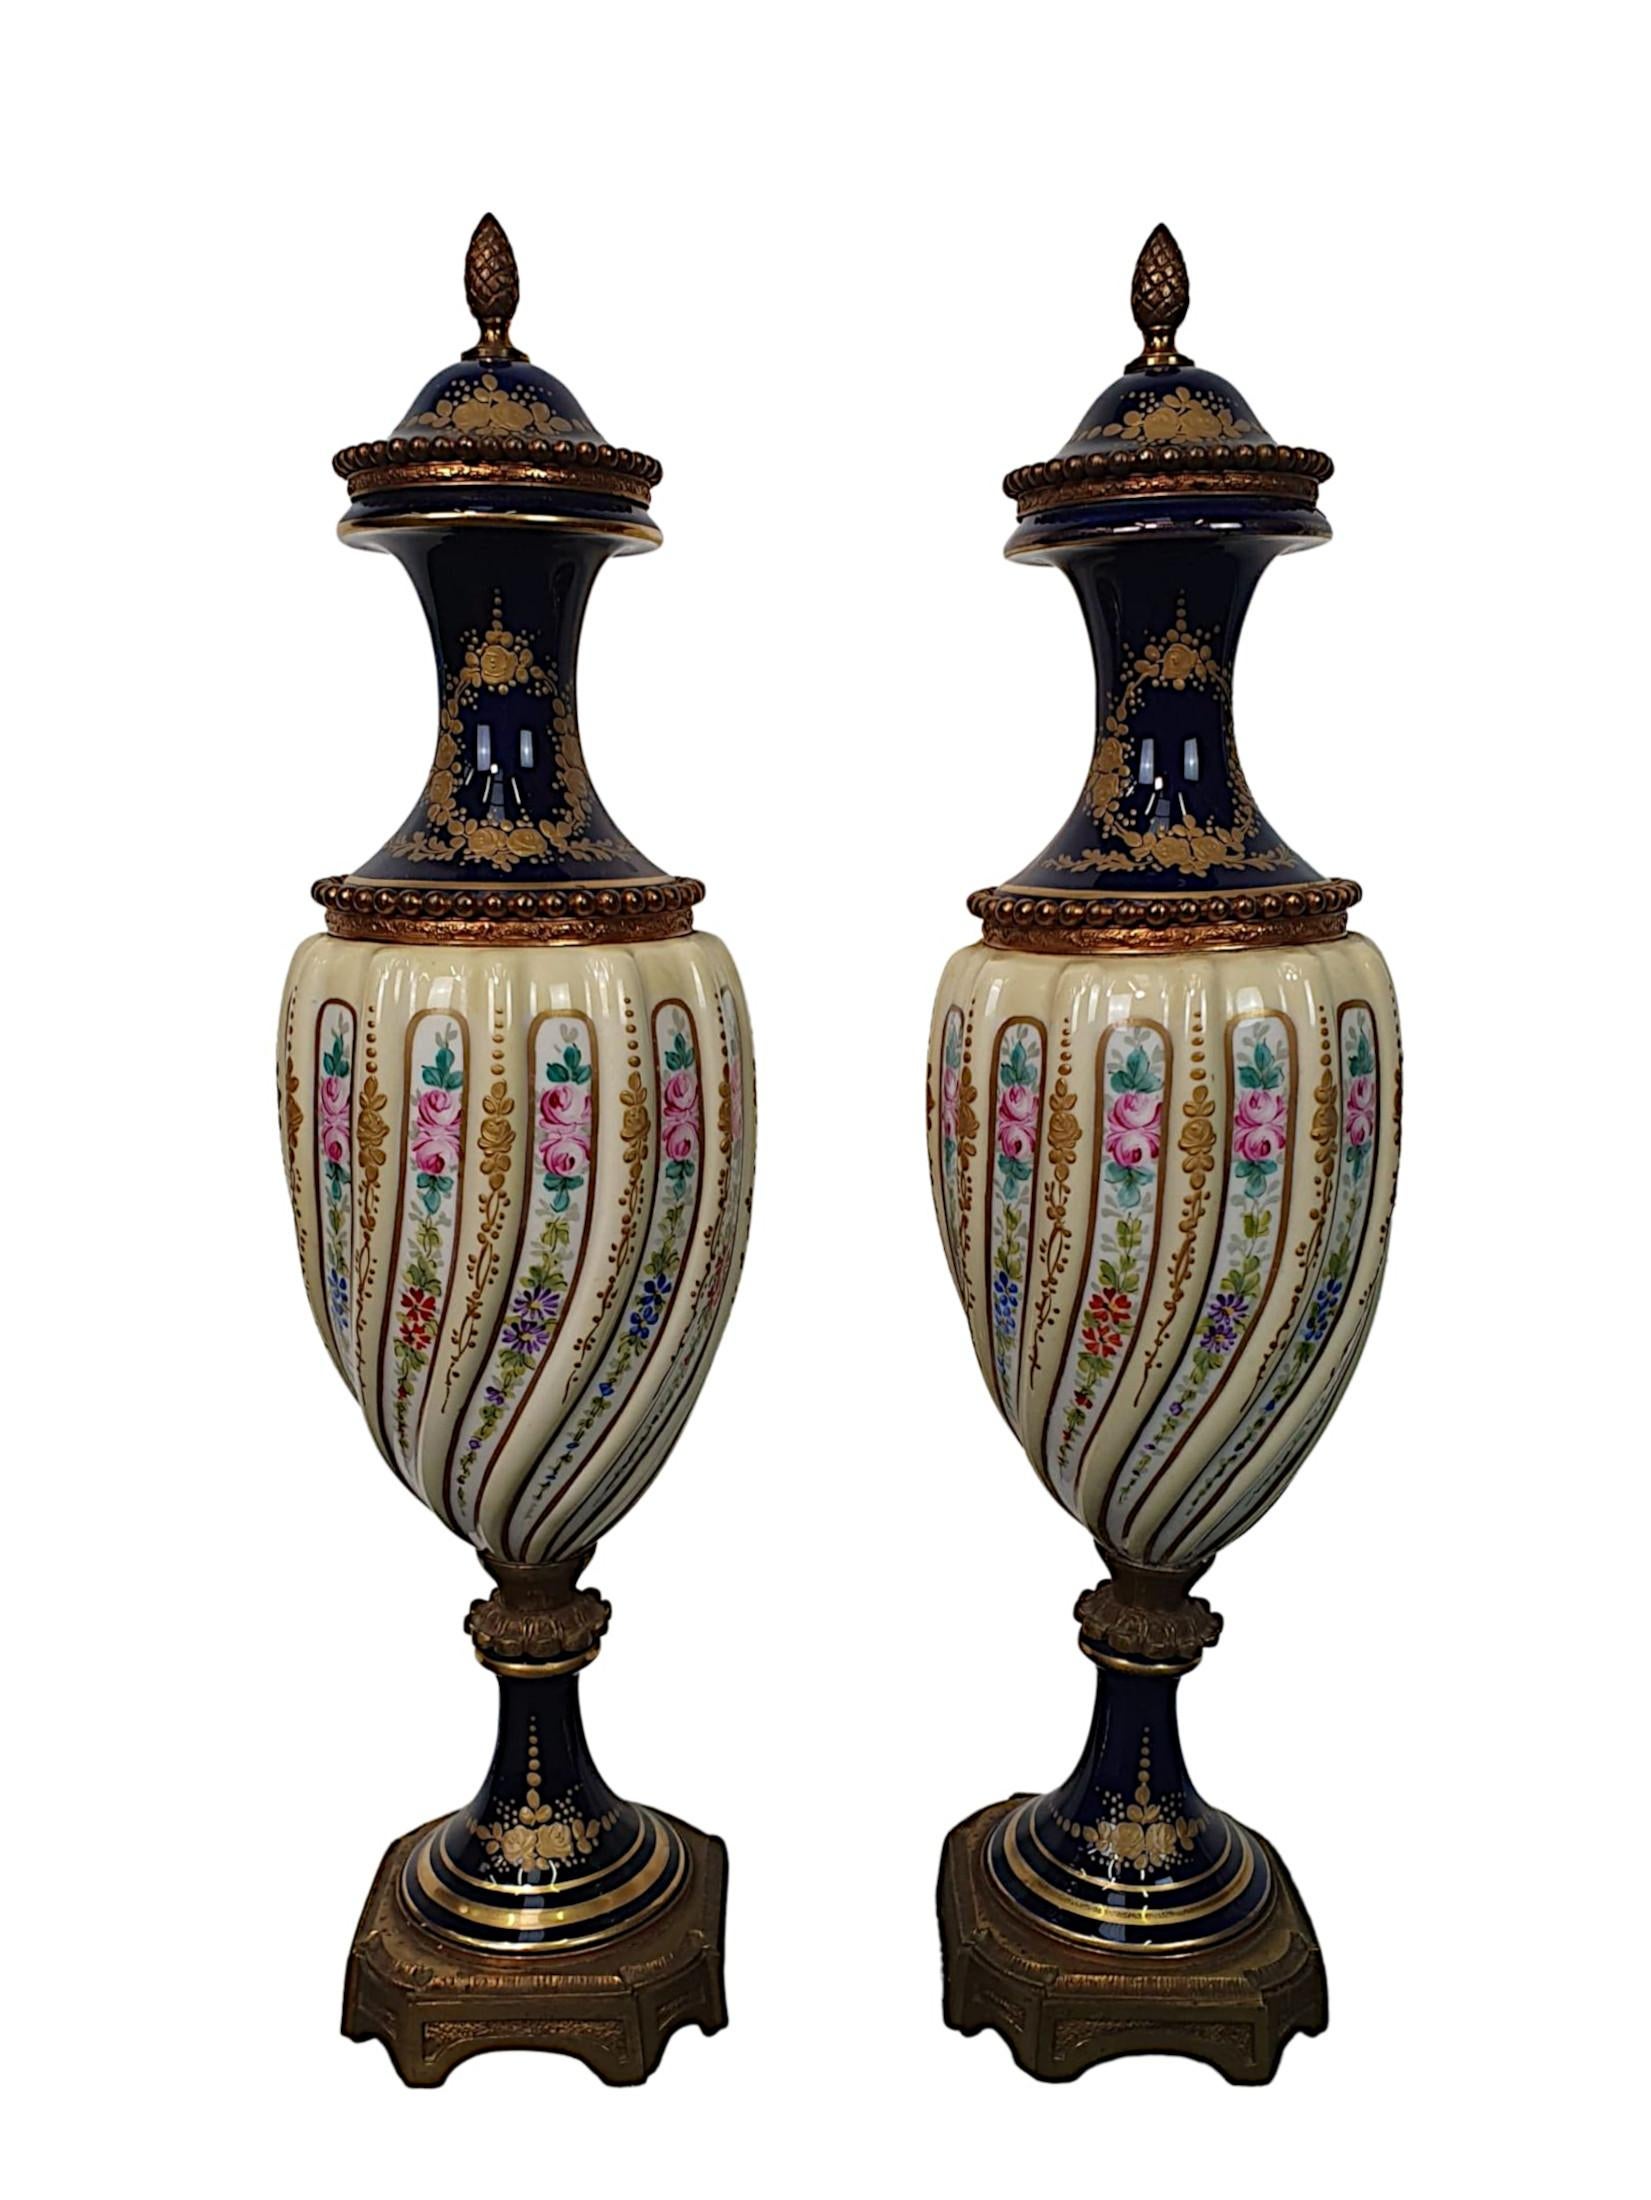 Ein schönes, hochwertiges Paar Porzellan- und Ormolu-Deckelurnen aus dem 19. Jahrhundert in der Art von Sèvres. Die Deckel mit Eichelabschluss sind über einem klassischen Baluster-Vasenkörper mit Perlenmotiv angebracht. Aufwendig von Hand bemalt mit